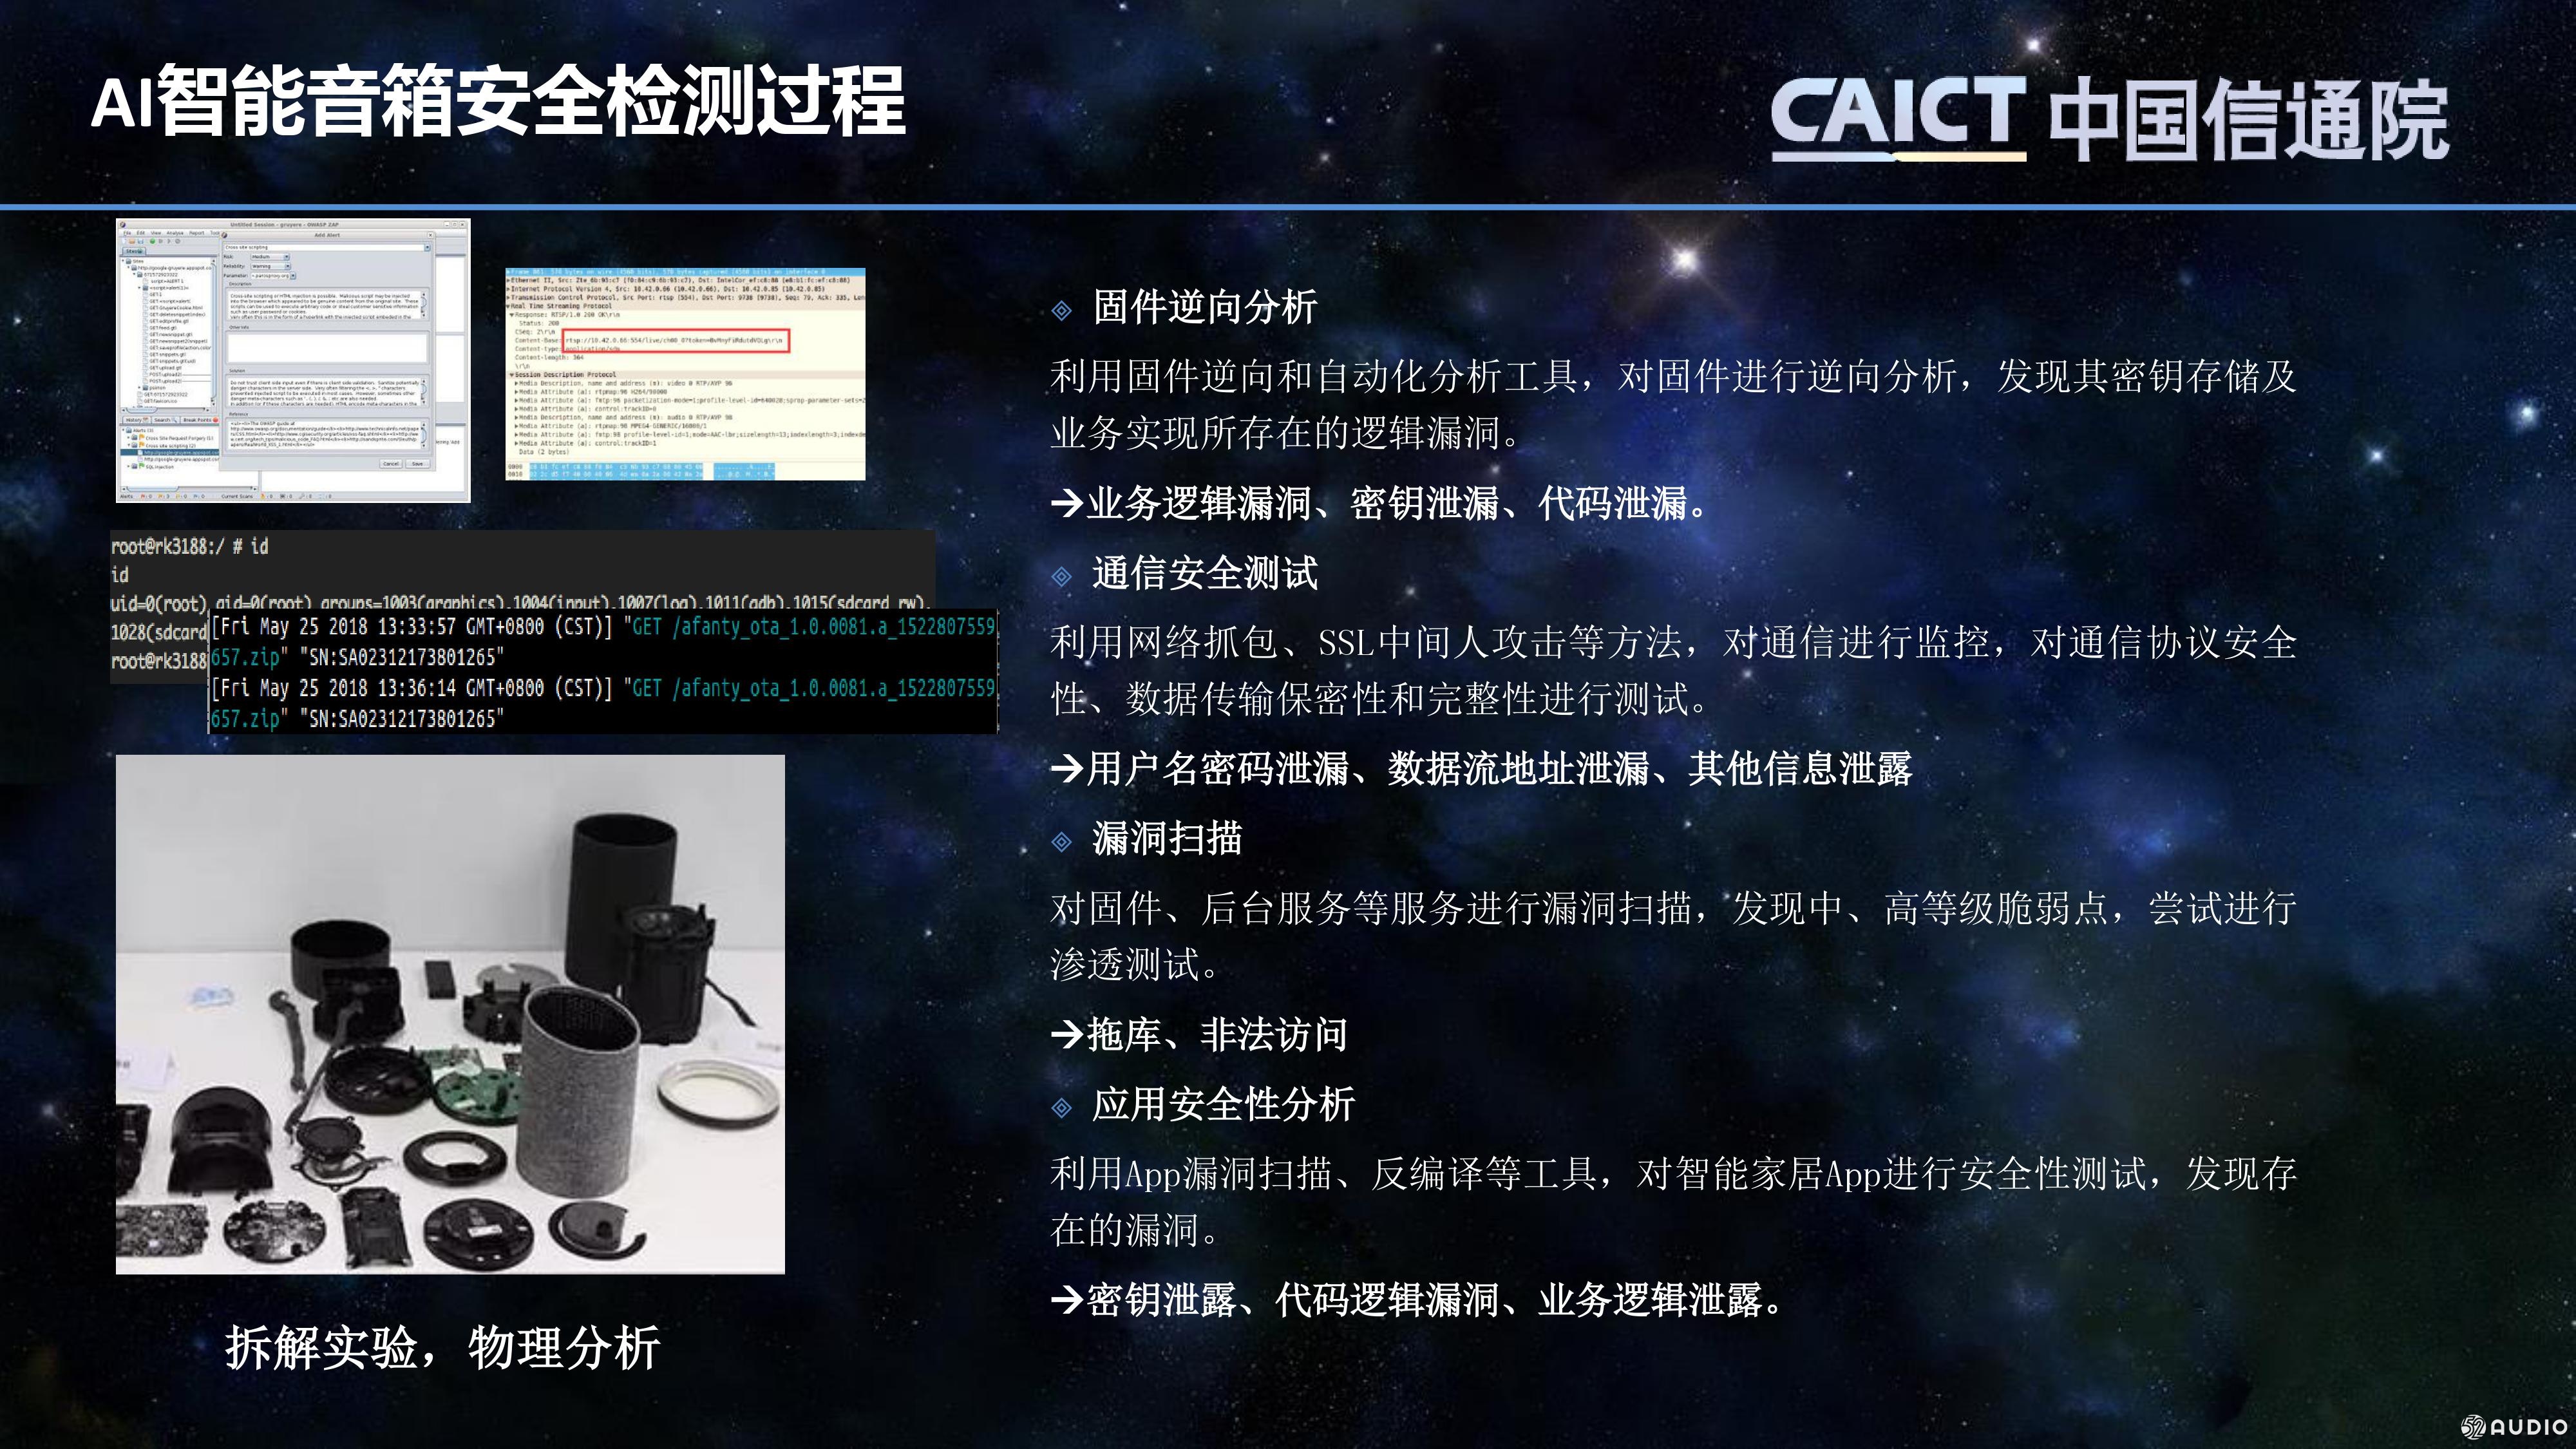 中国信息通信研究院 高级工程师 刘陶博士 《AI智能音箱信息安全风险与评测解读》PPT下载-我爱音频网